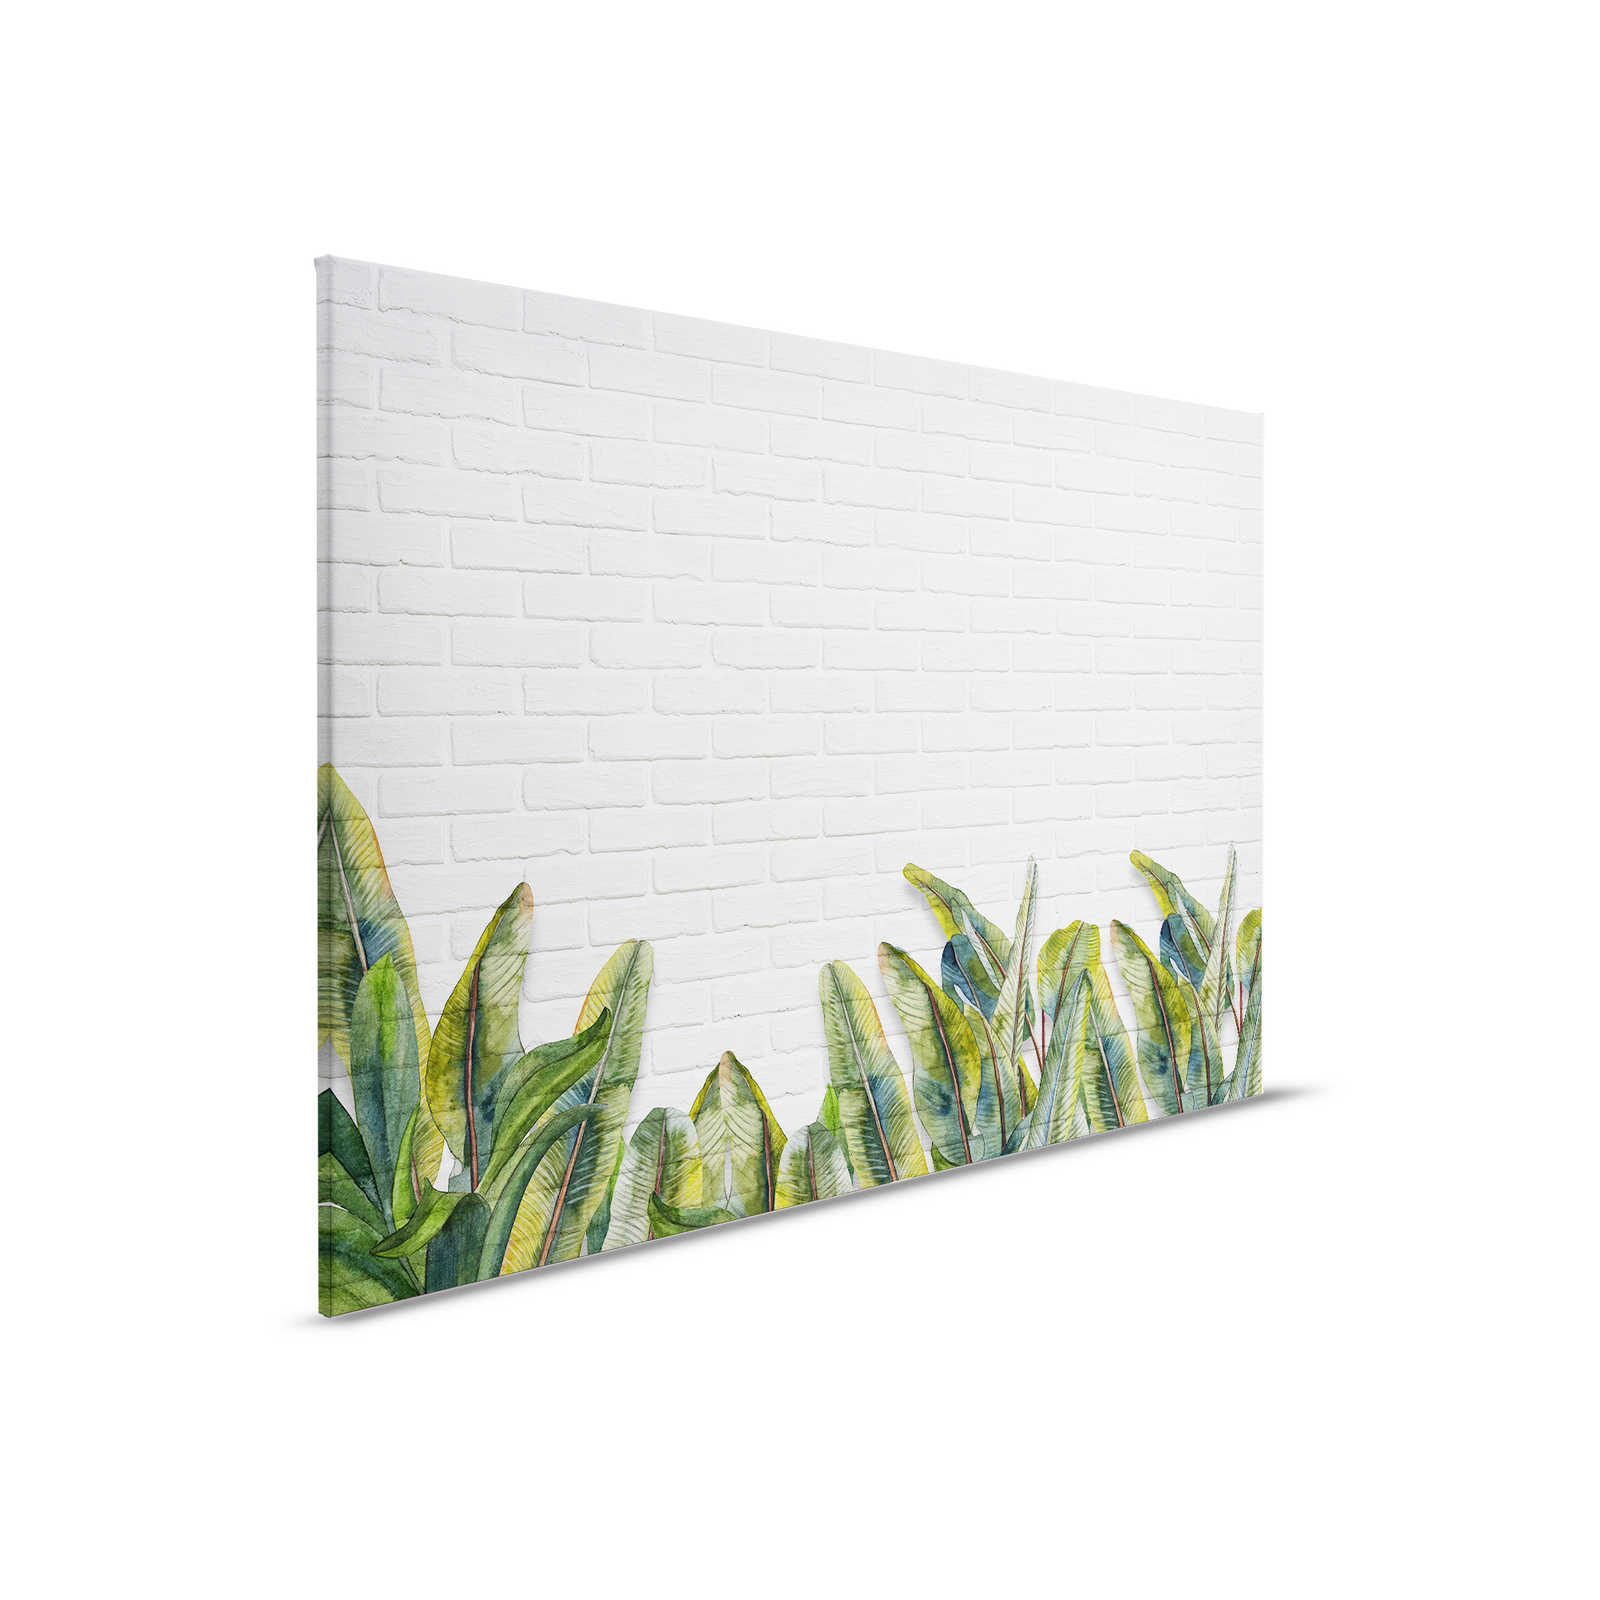 Quadro su tela con foglie davanti a una parete di mattoni bianchi - 0,90 m x 0,60 m
